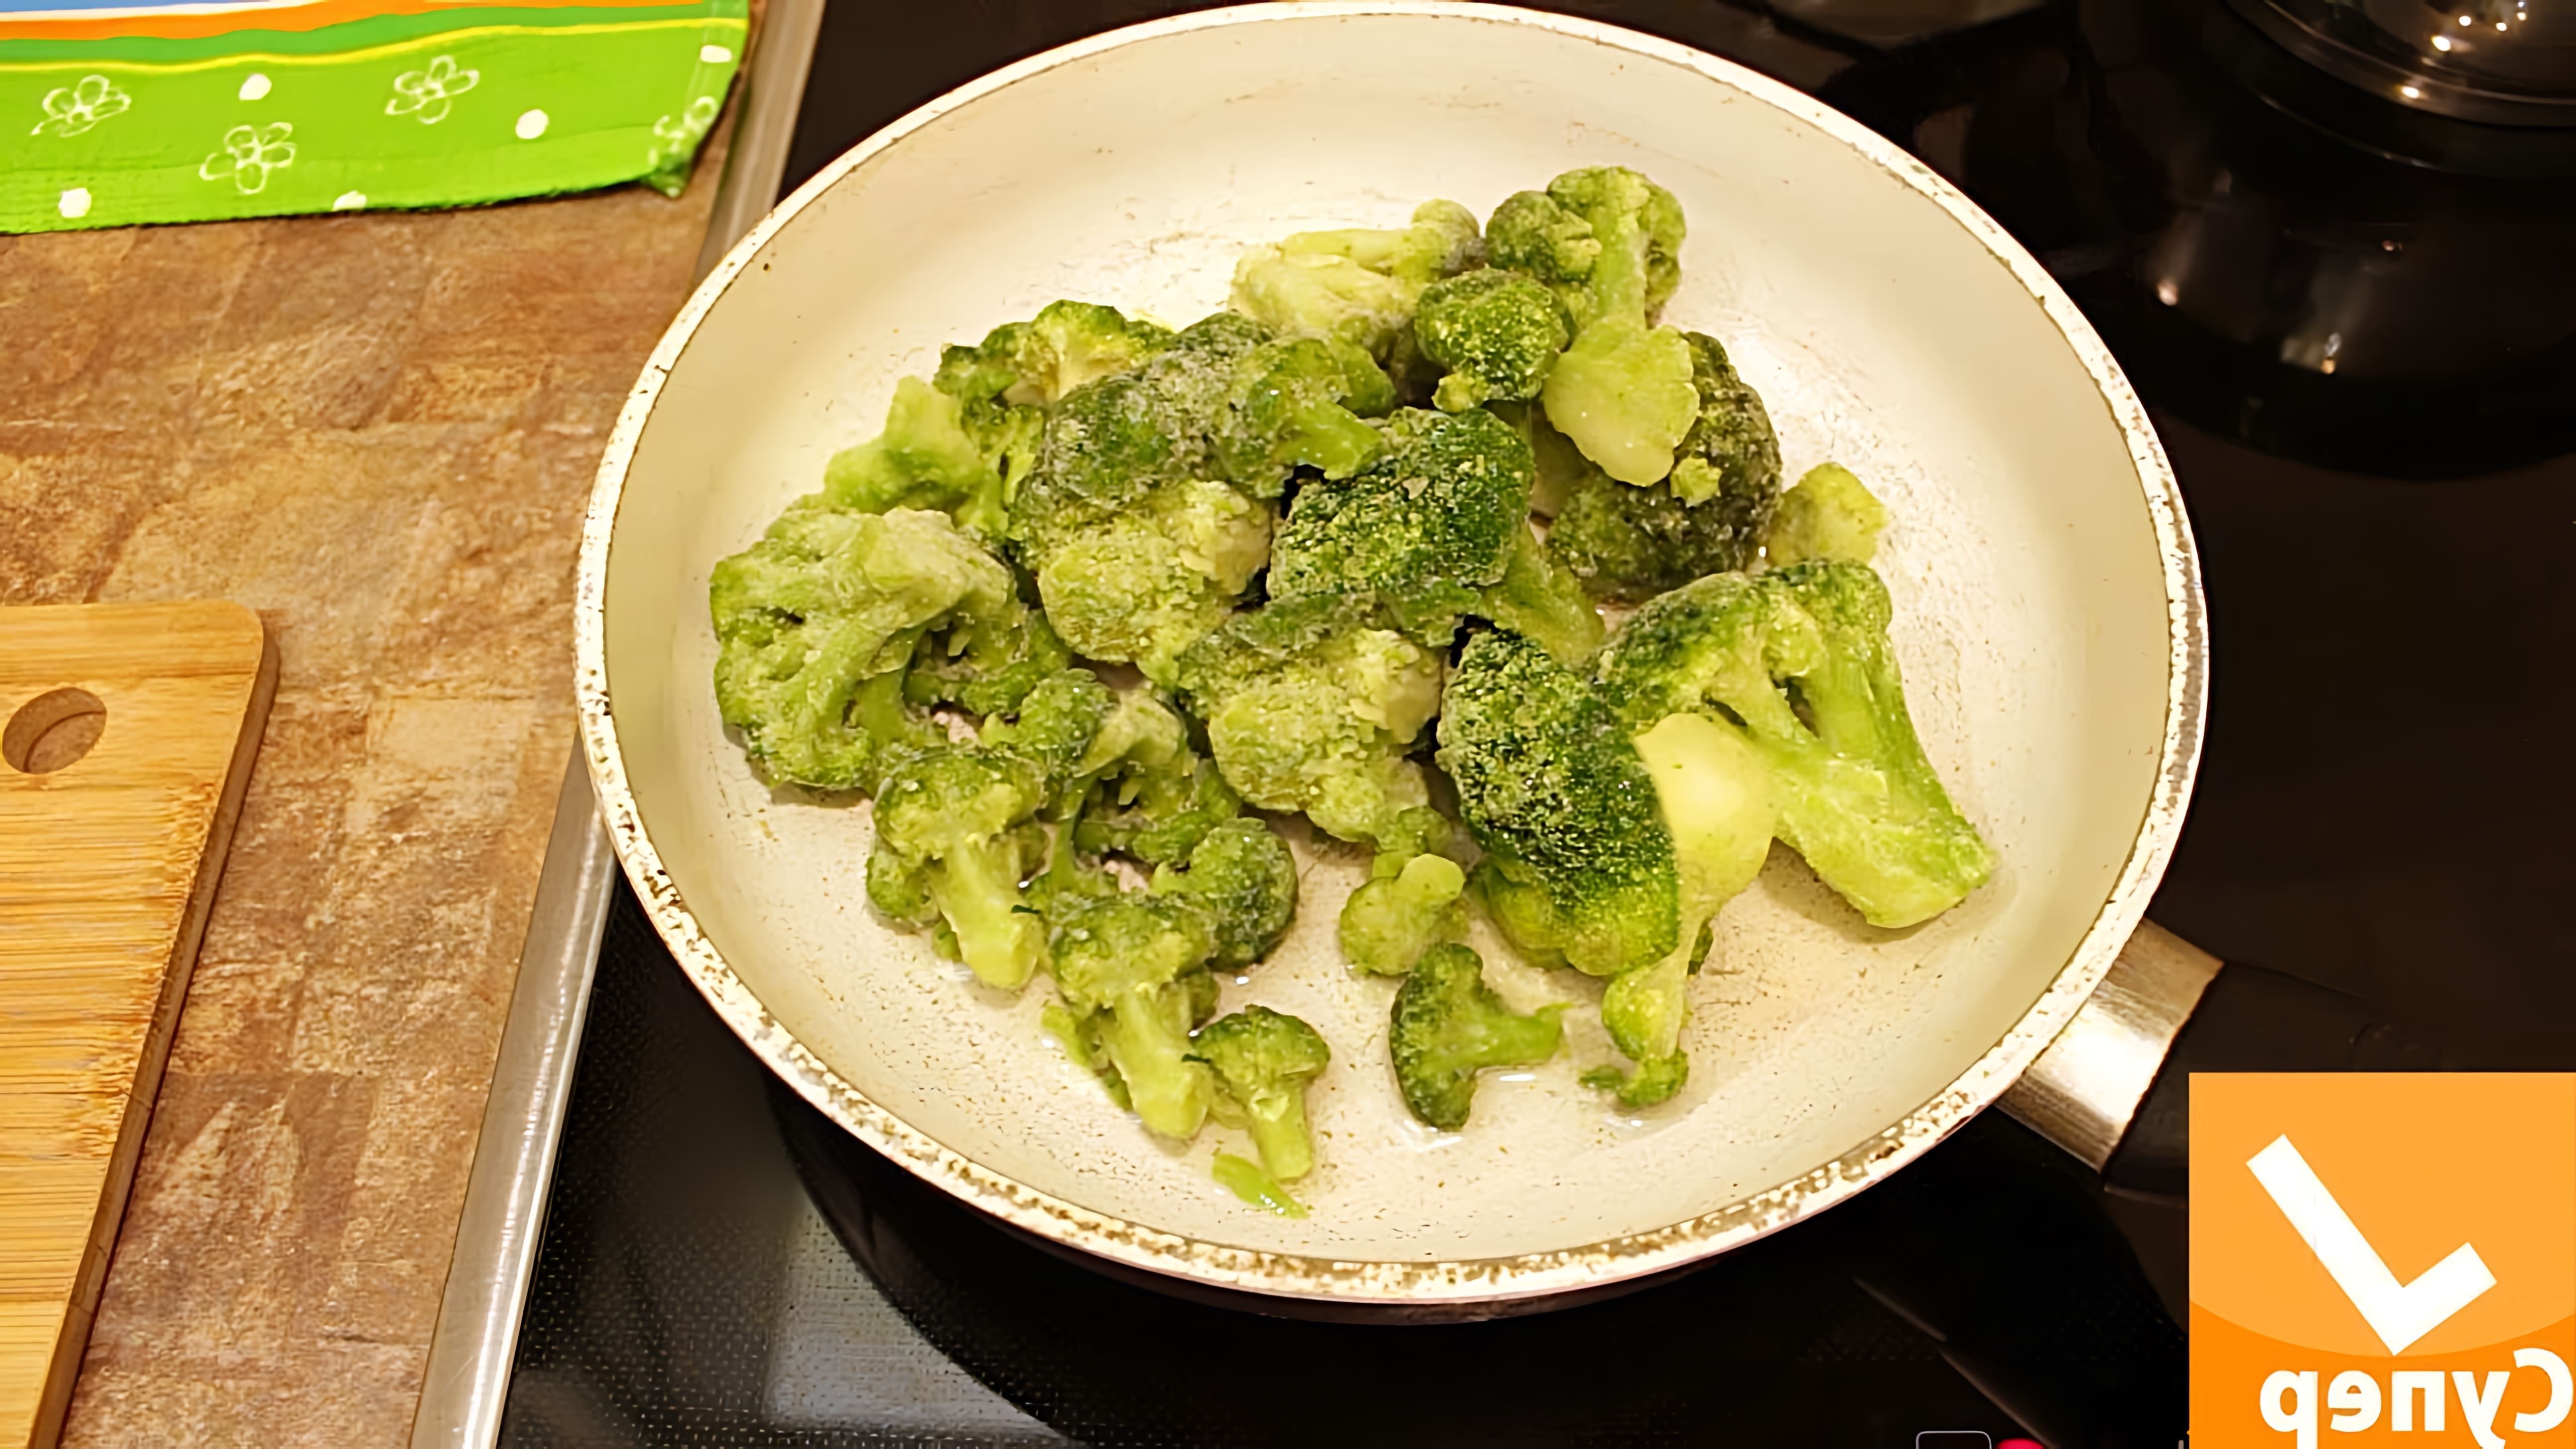 В этом видео показано, как приготовить капусту брокколи свежую замороженную на сковородке